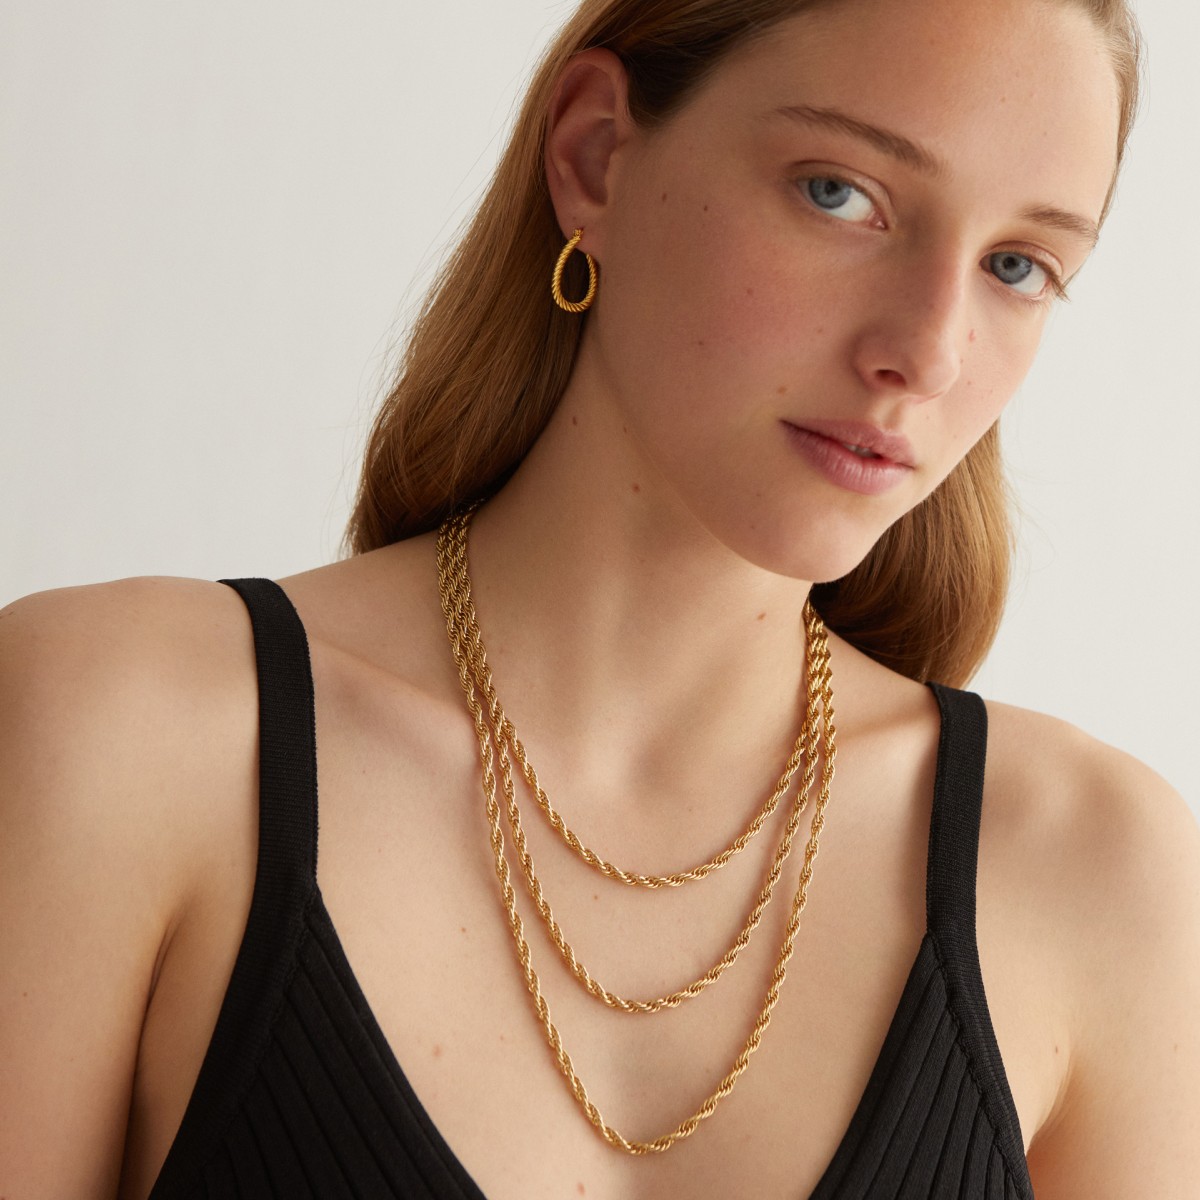 Marguerite Chain Small - Halsketten - 24k vergoldet